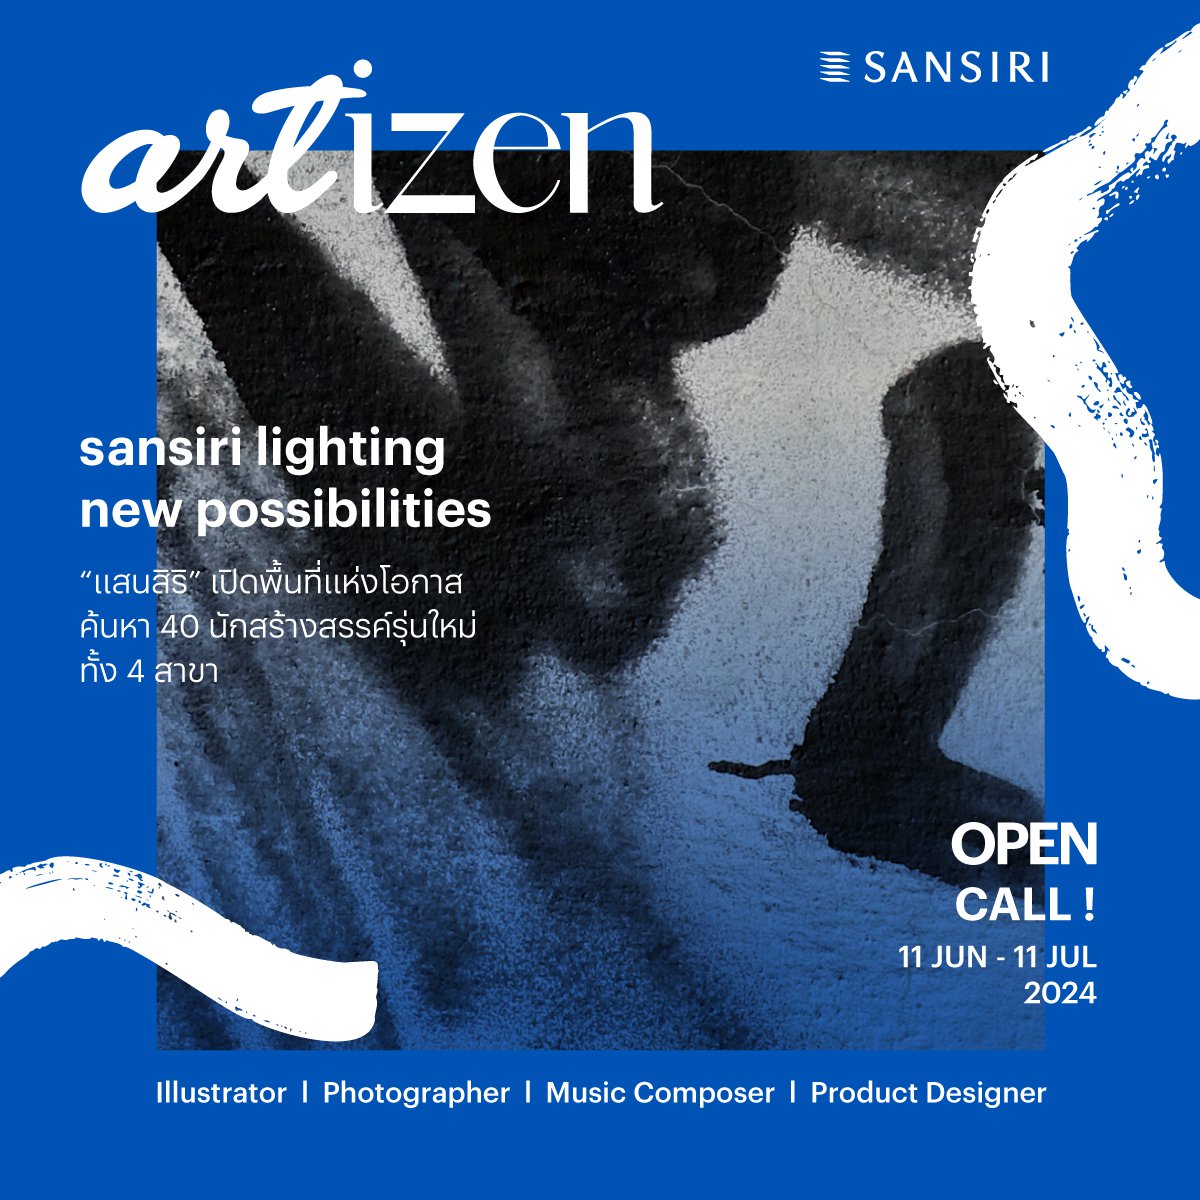 ครั้งแรก! แสนสิริ จับมือนักออกแบบและศิลปินระดับประเทศ เปิดตัวโปรเจกต์ “ARTIZEN” พื้นที่แห่งโอกาส เอ็มพาวเวอร์ New Talent